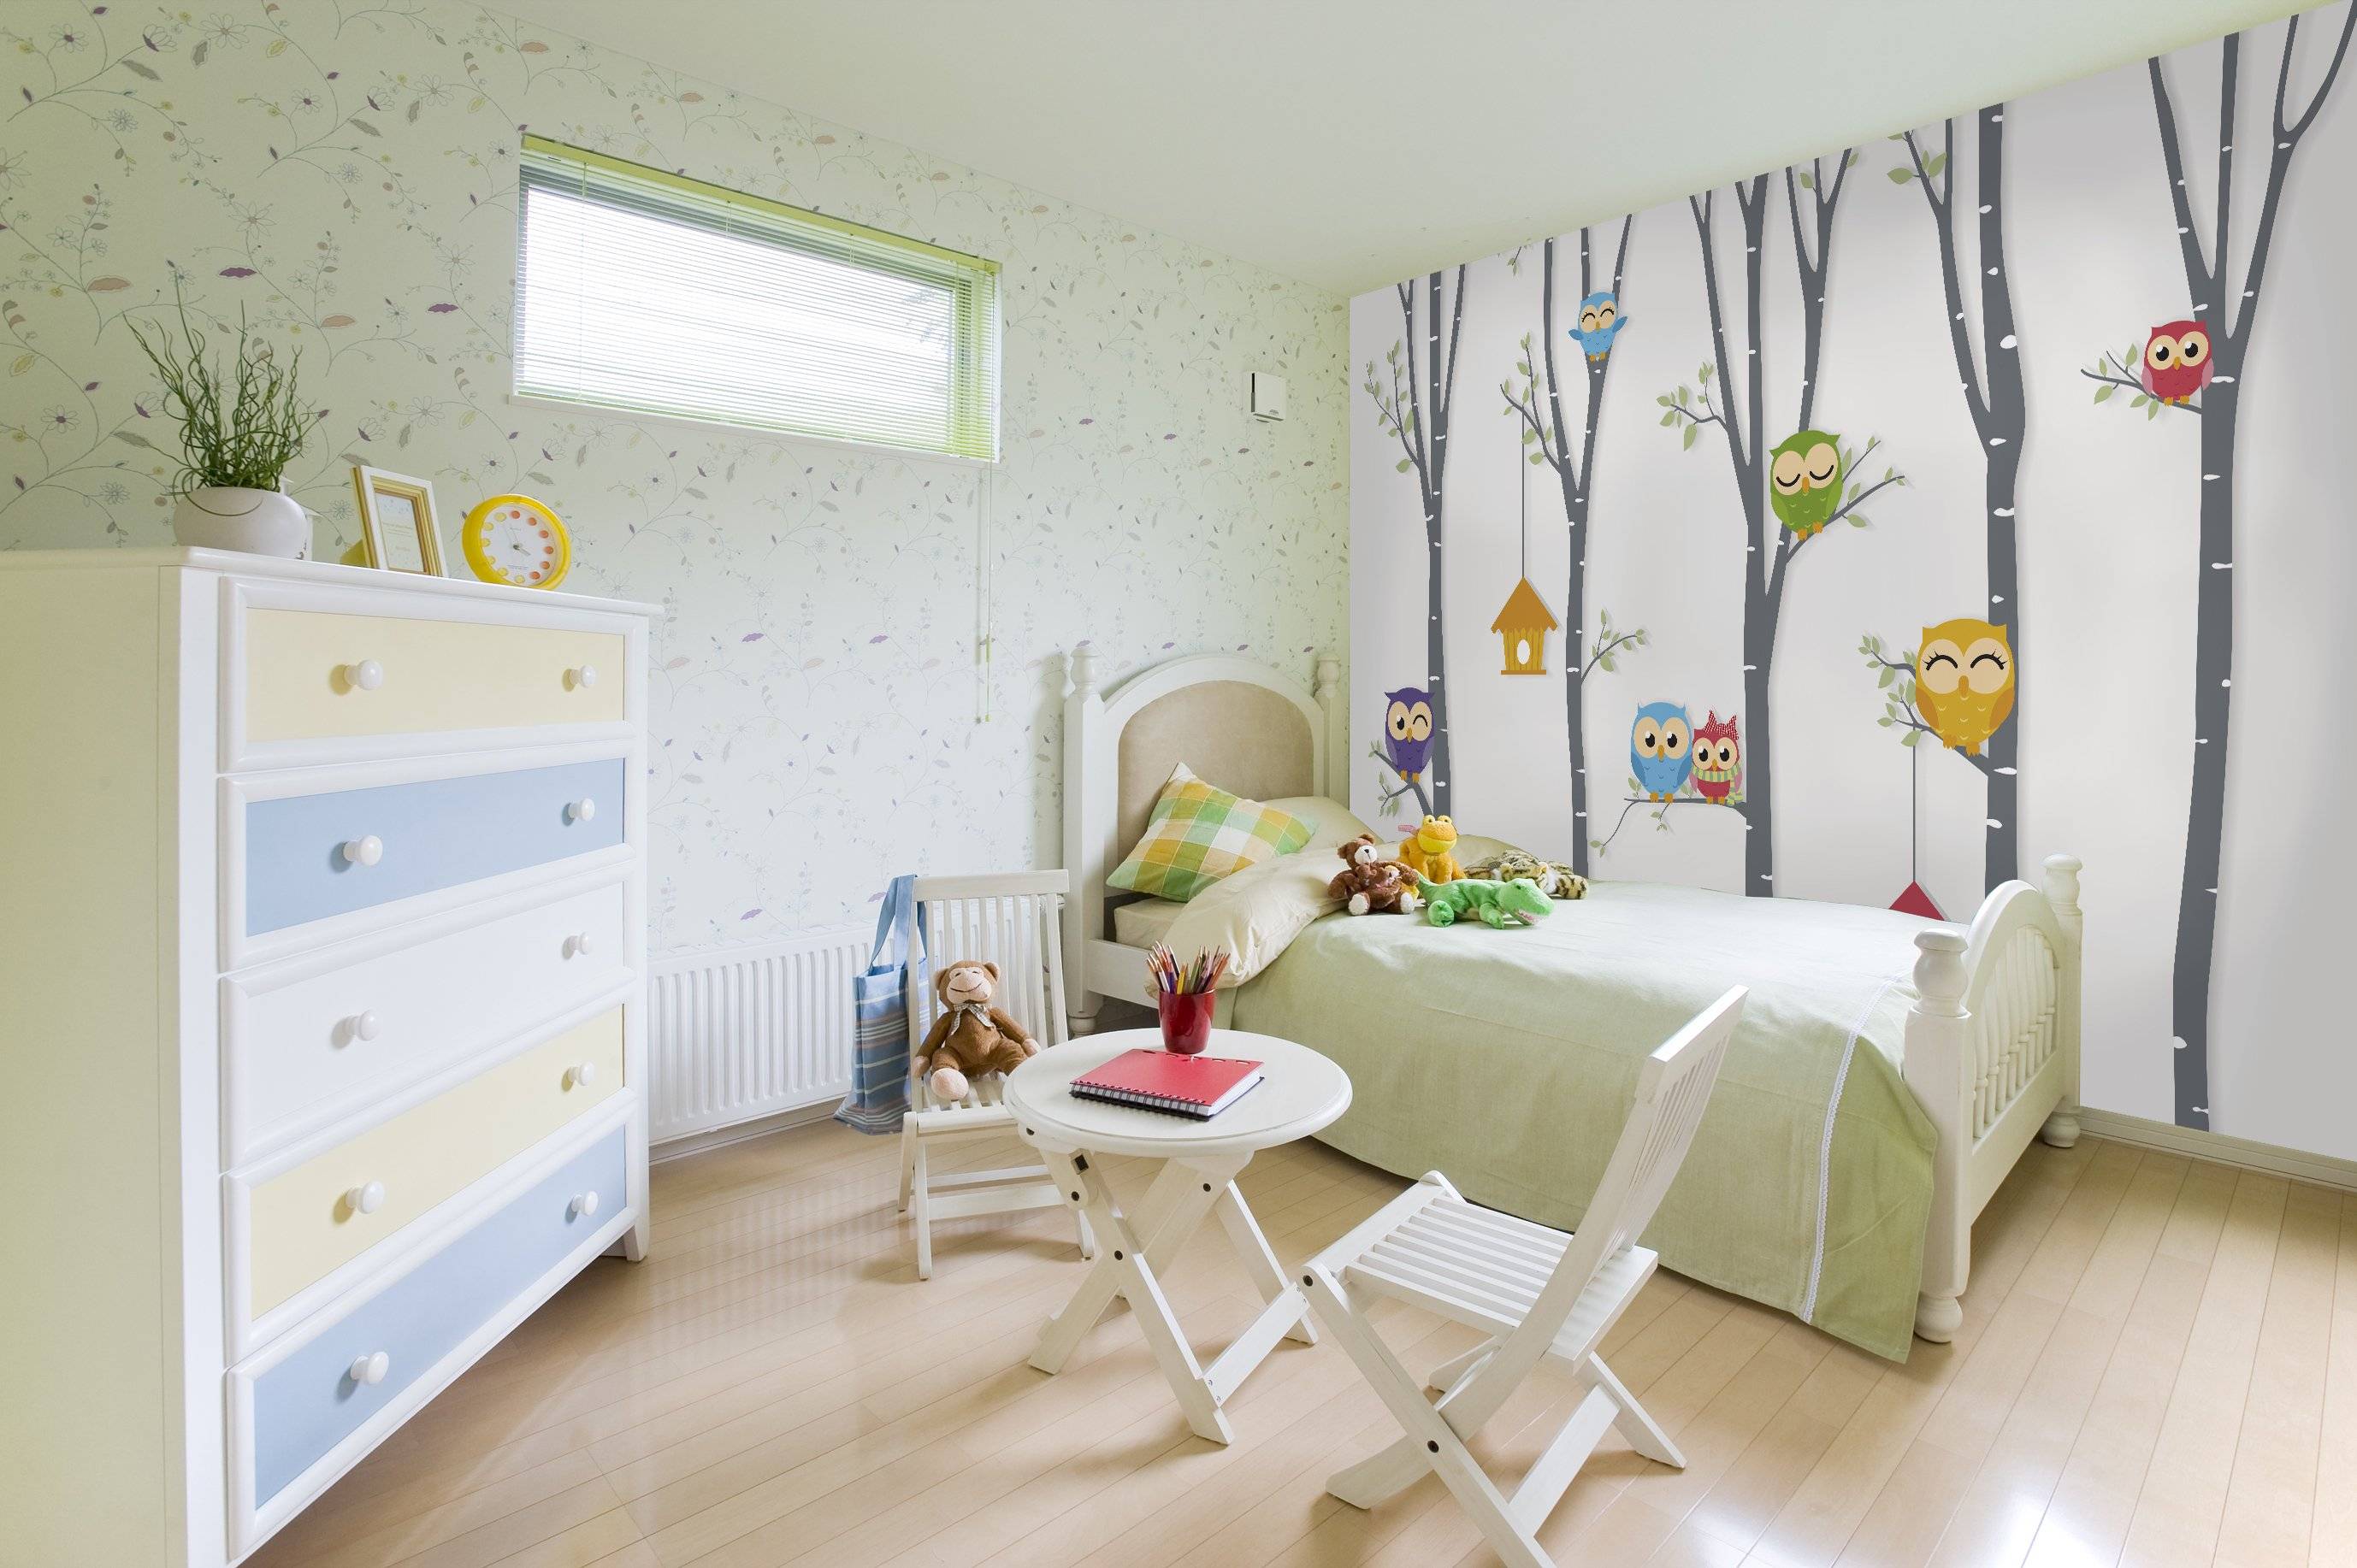 Фотообои для детской комнаты - советы по выбору и идеи применения (170 фото)